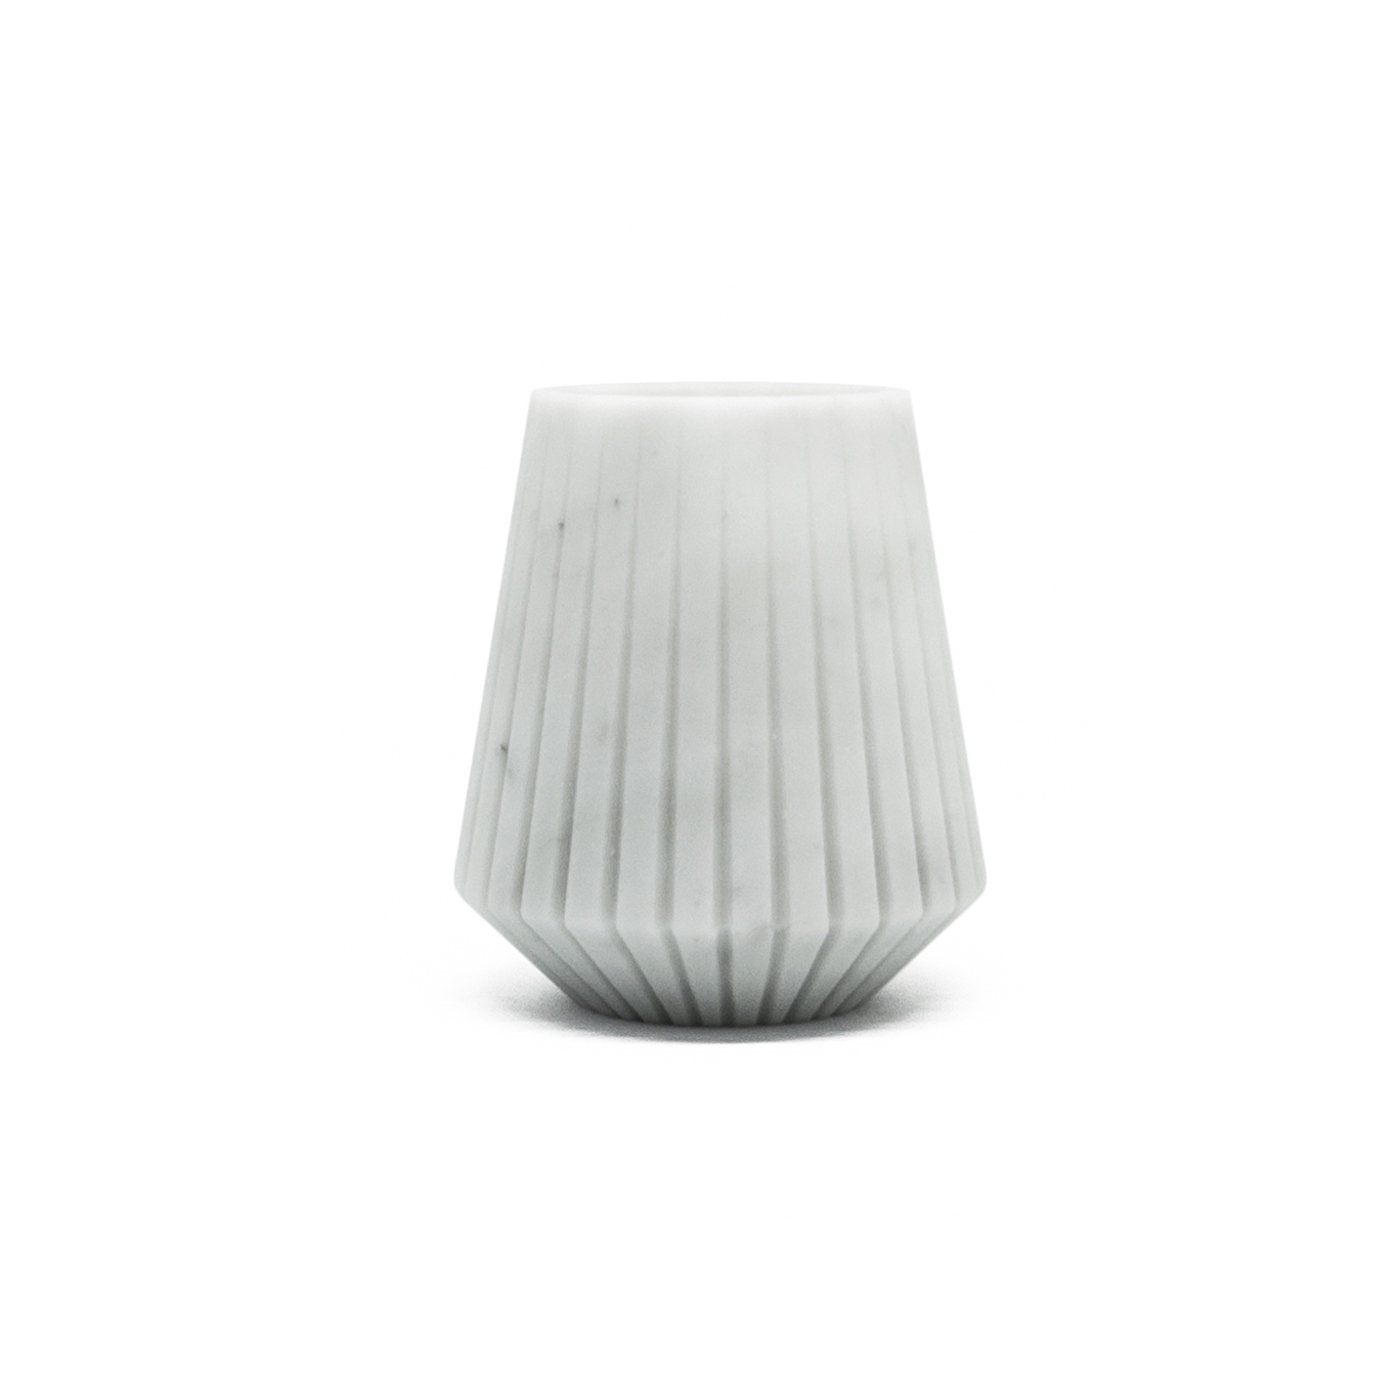 White Carrara Marble Low Vase by Jacopo Simonetti - Alternative view 4